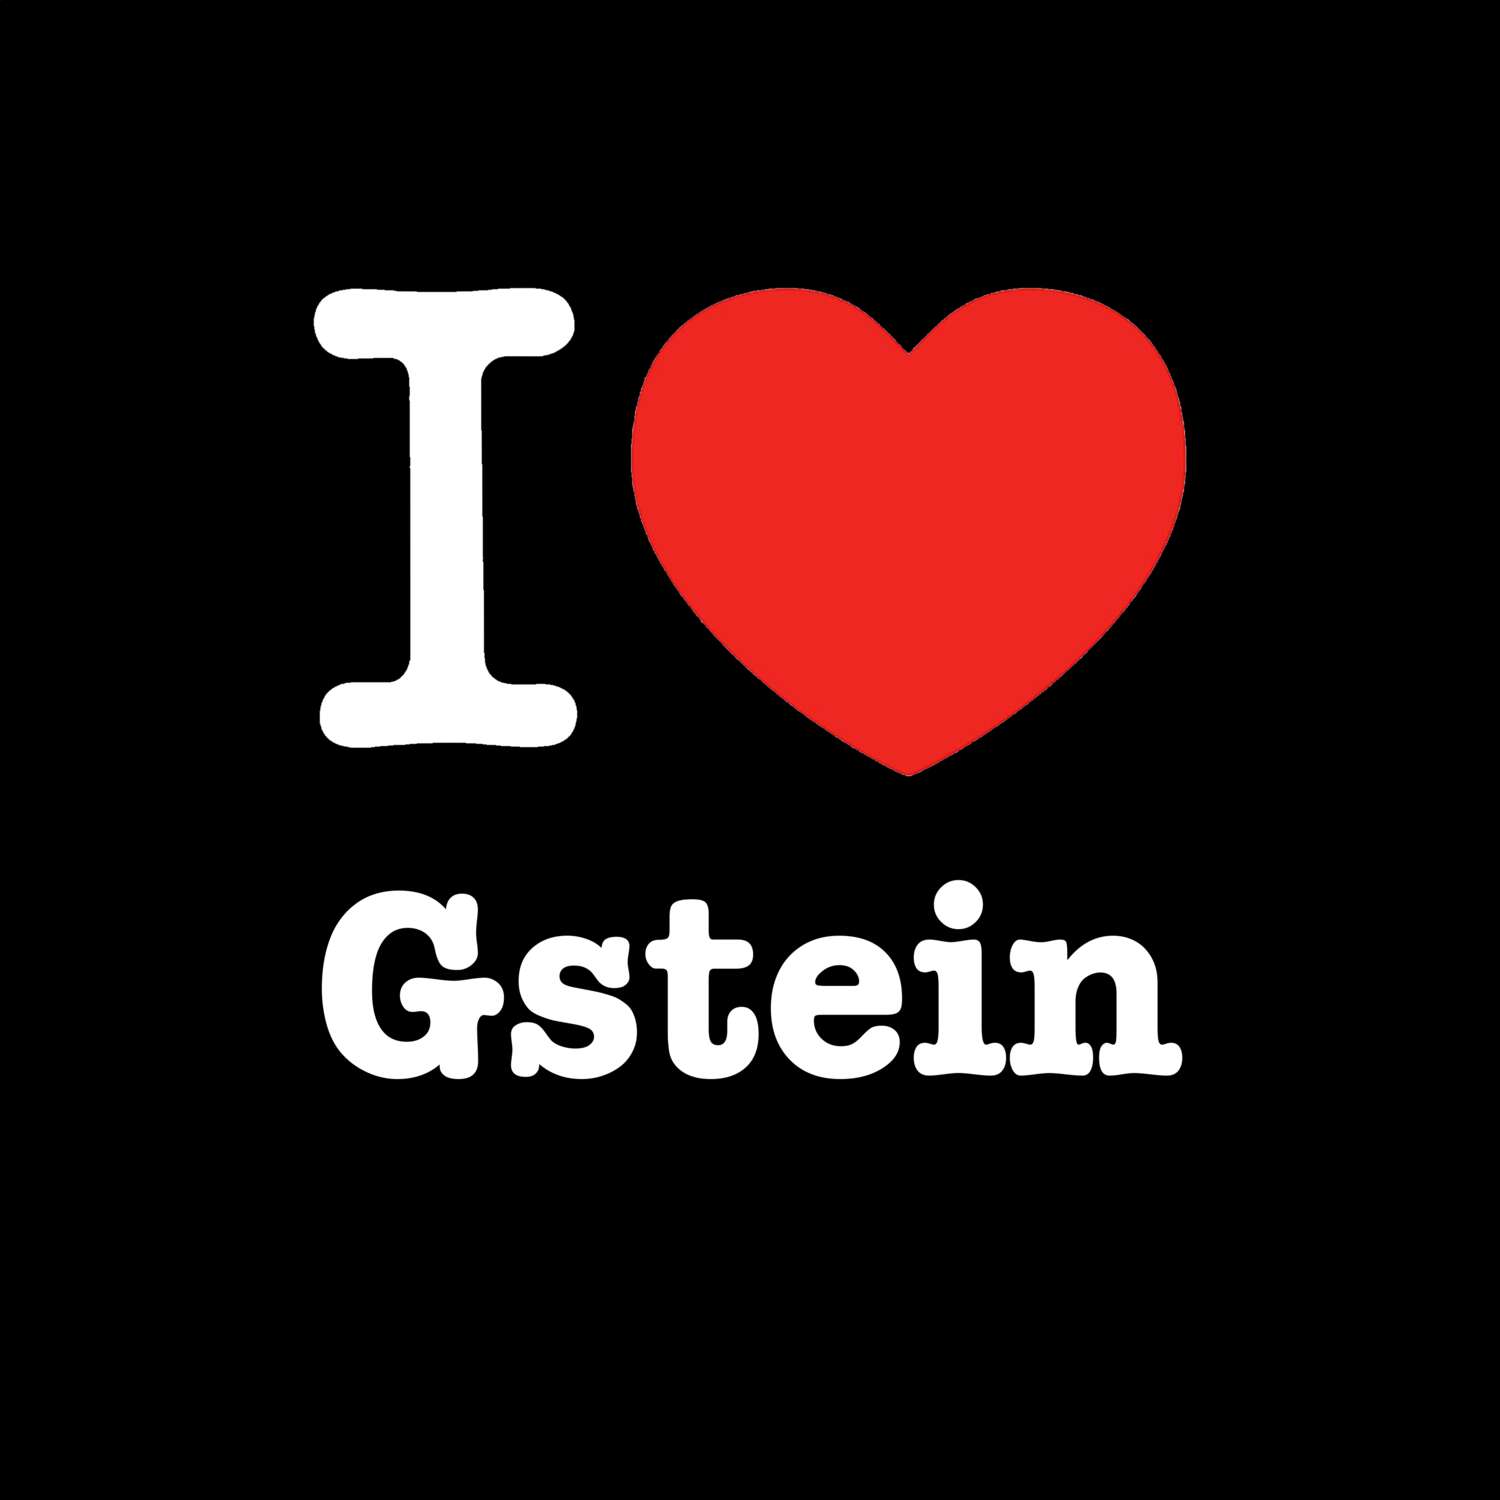 Gstein T-Shirt »I love«